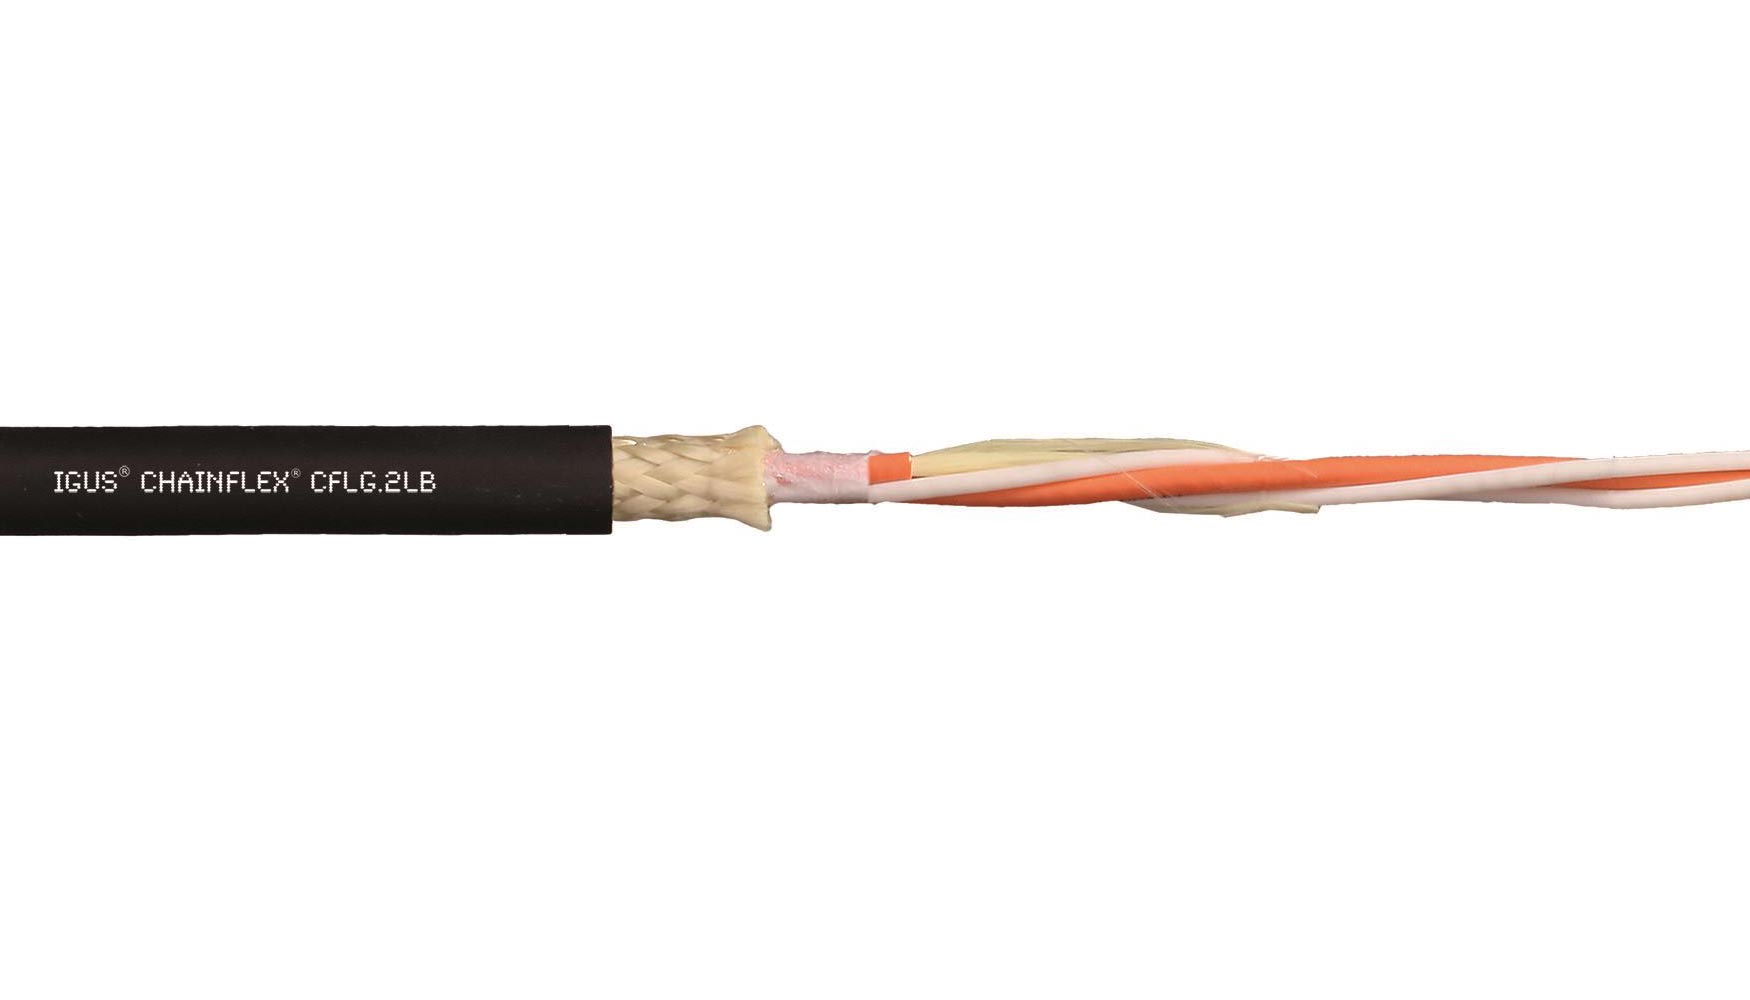 Chainflex CFLG.LB.PUR es un cable de fibra ptica especialmente desarrollado para las aplicaciones martimas u offshore en movimiento continuo...